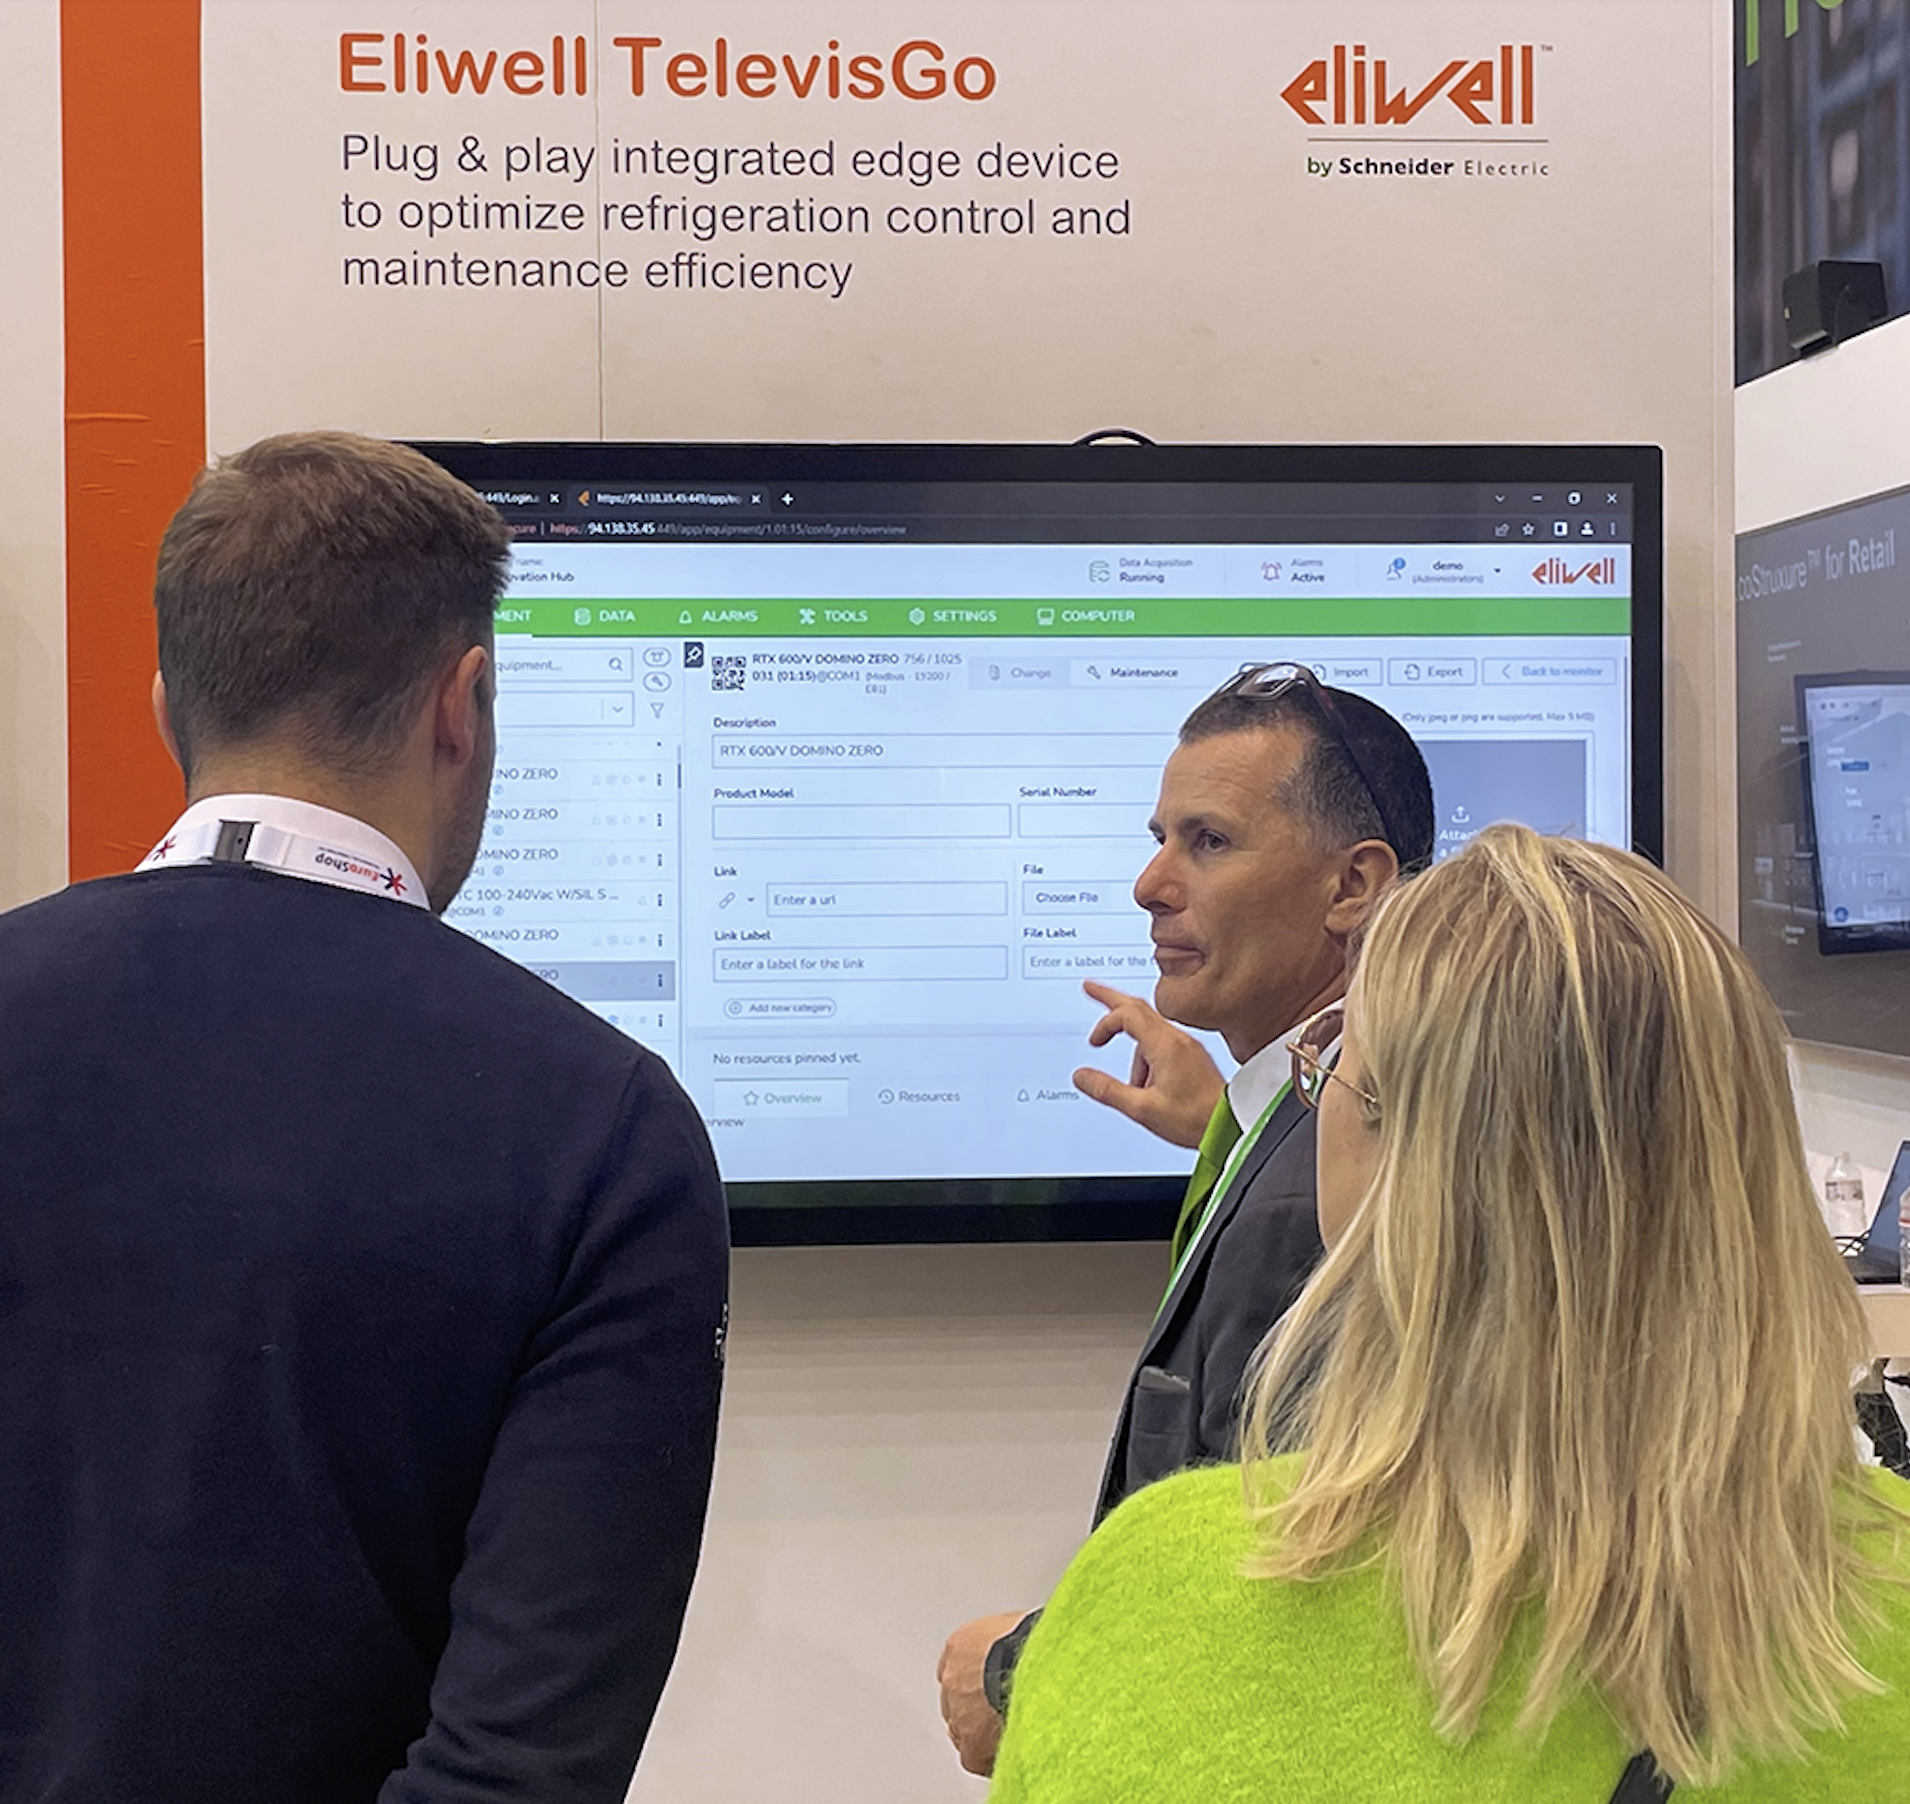 TelevisGo v10 di Eliwell, il sistema di supervisione con interfaccia utente rinnovata